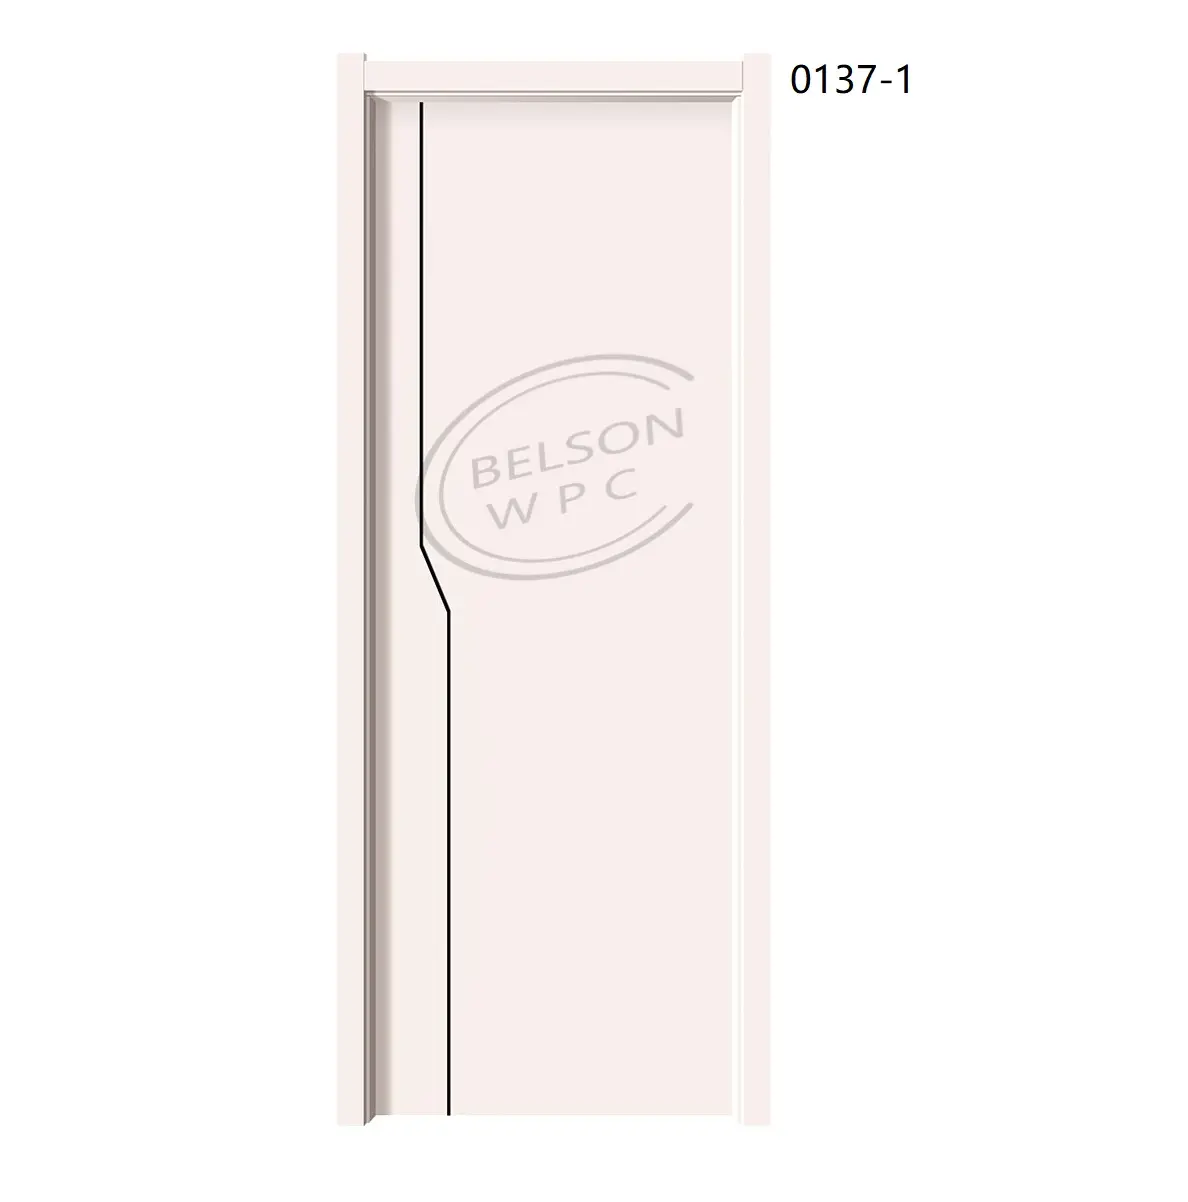 Huangshan Belson bagno camera da letto ripostiglio impermeabile porta WPC con serrature in acciaio inox cerniera